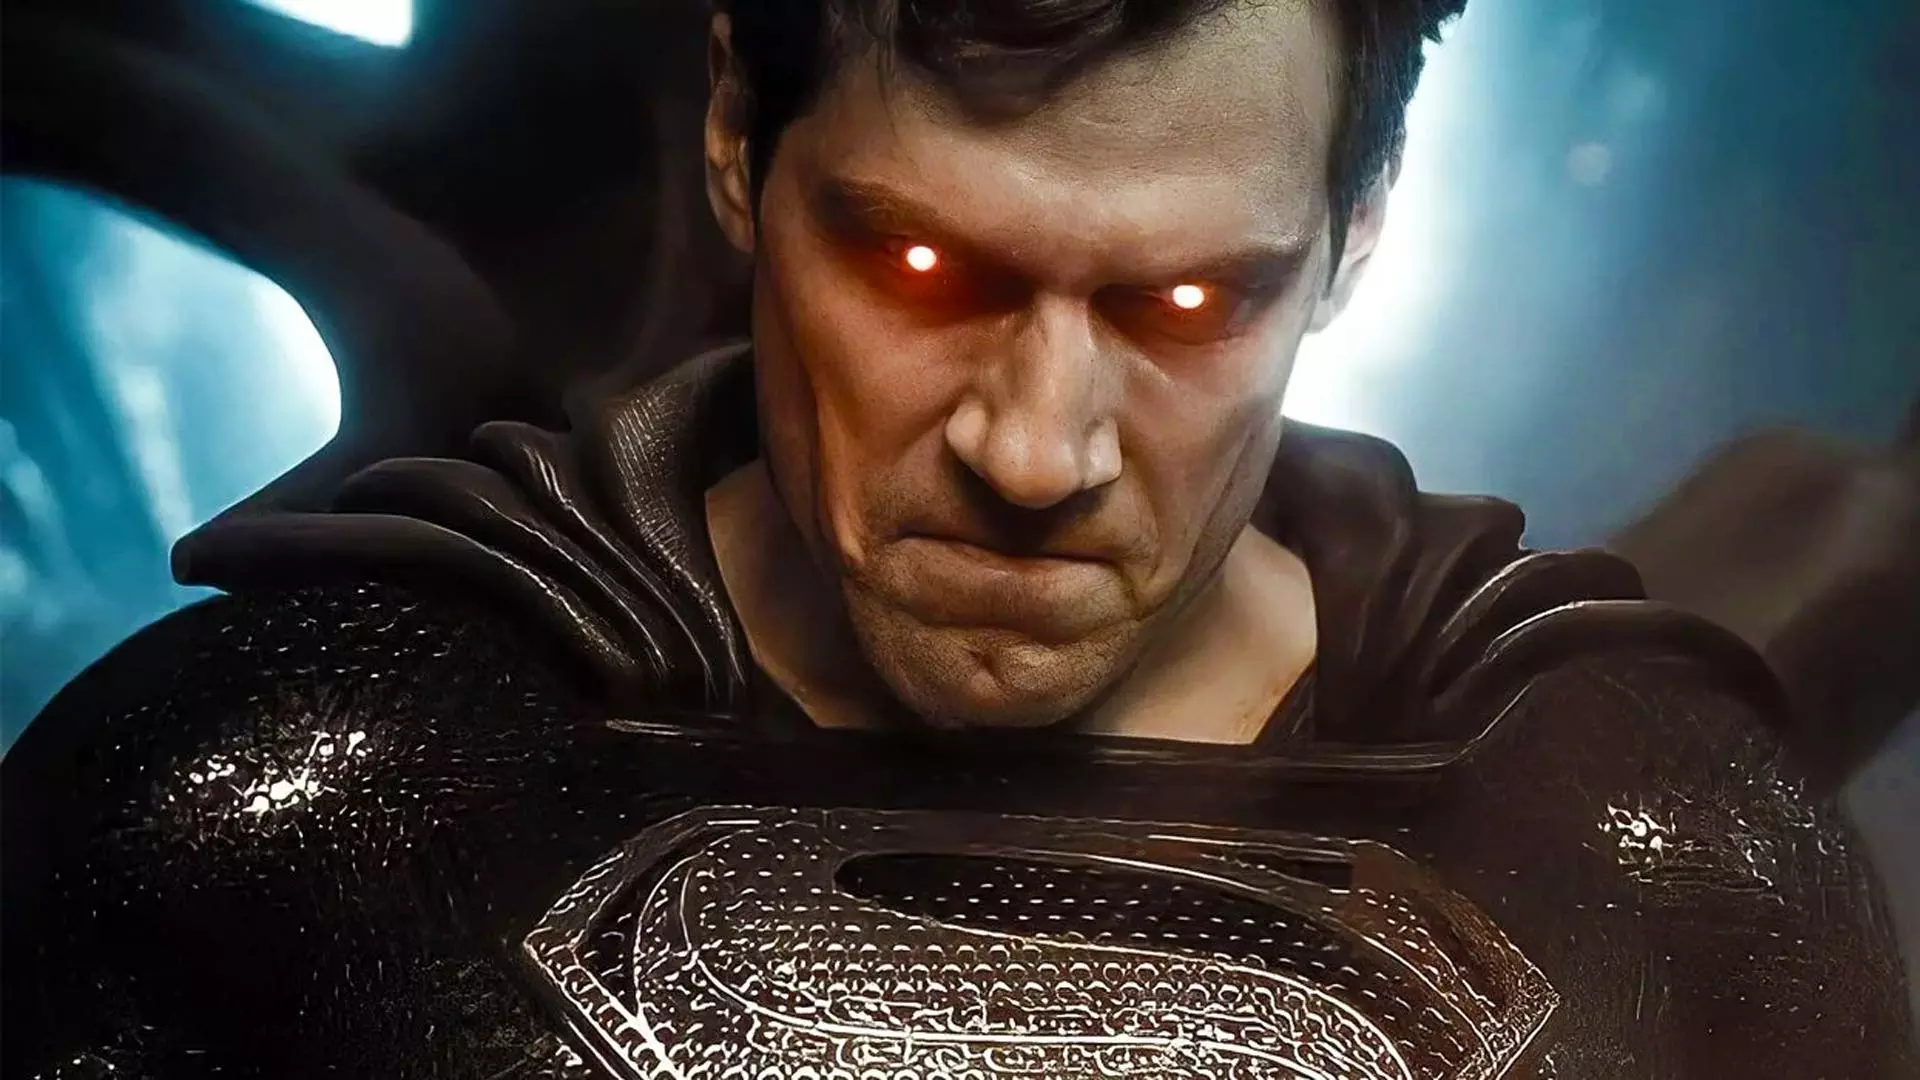 علاقه هنری کویل به بازی دوباره در نقش سوپرمن تا حضور در دنیای سینمایی مارول